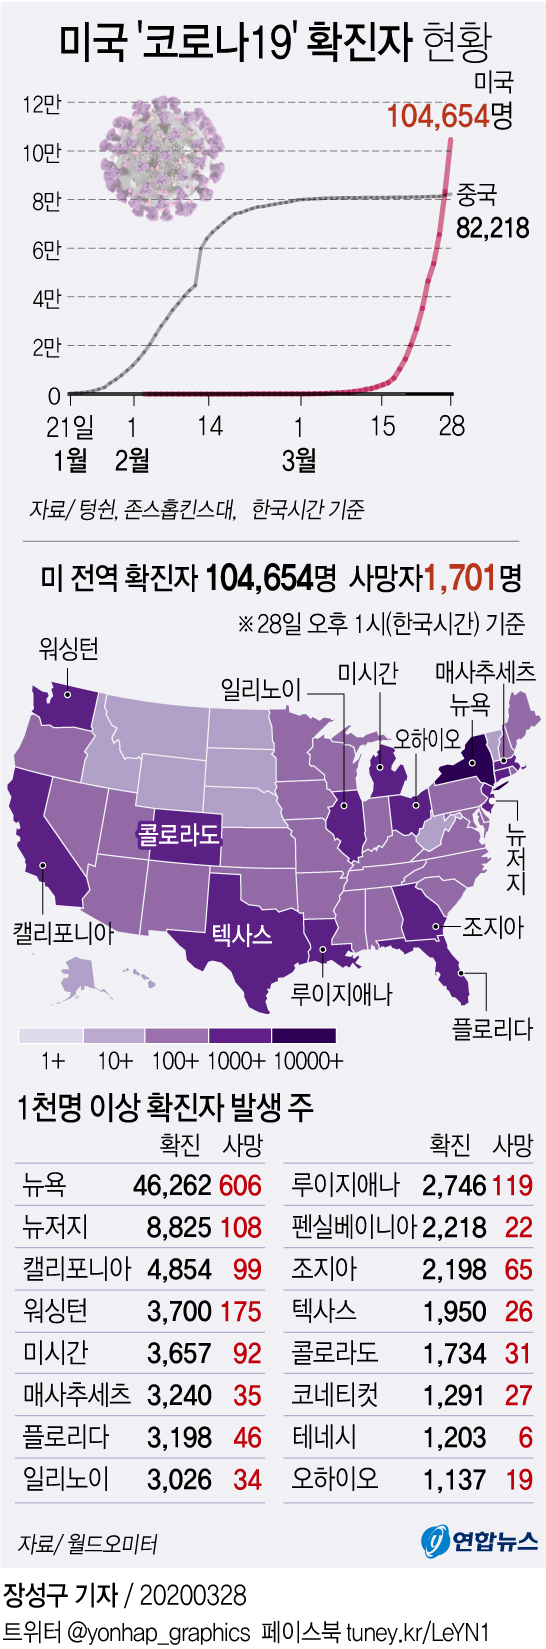 [그래픽] 미국 '코로나19' 발생 현황